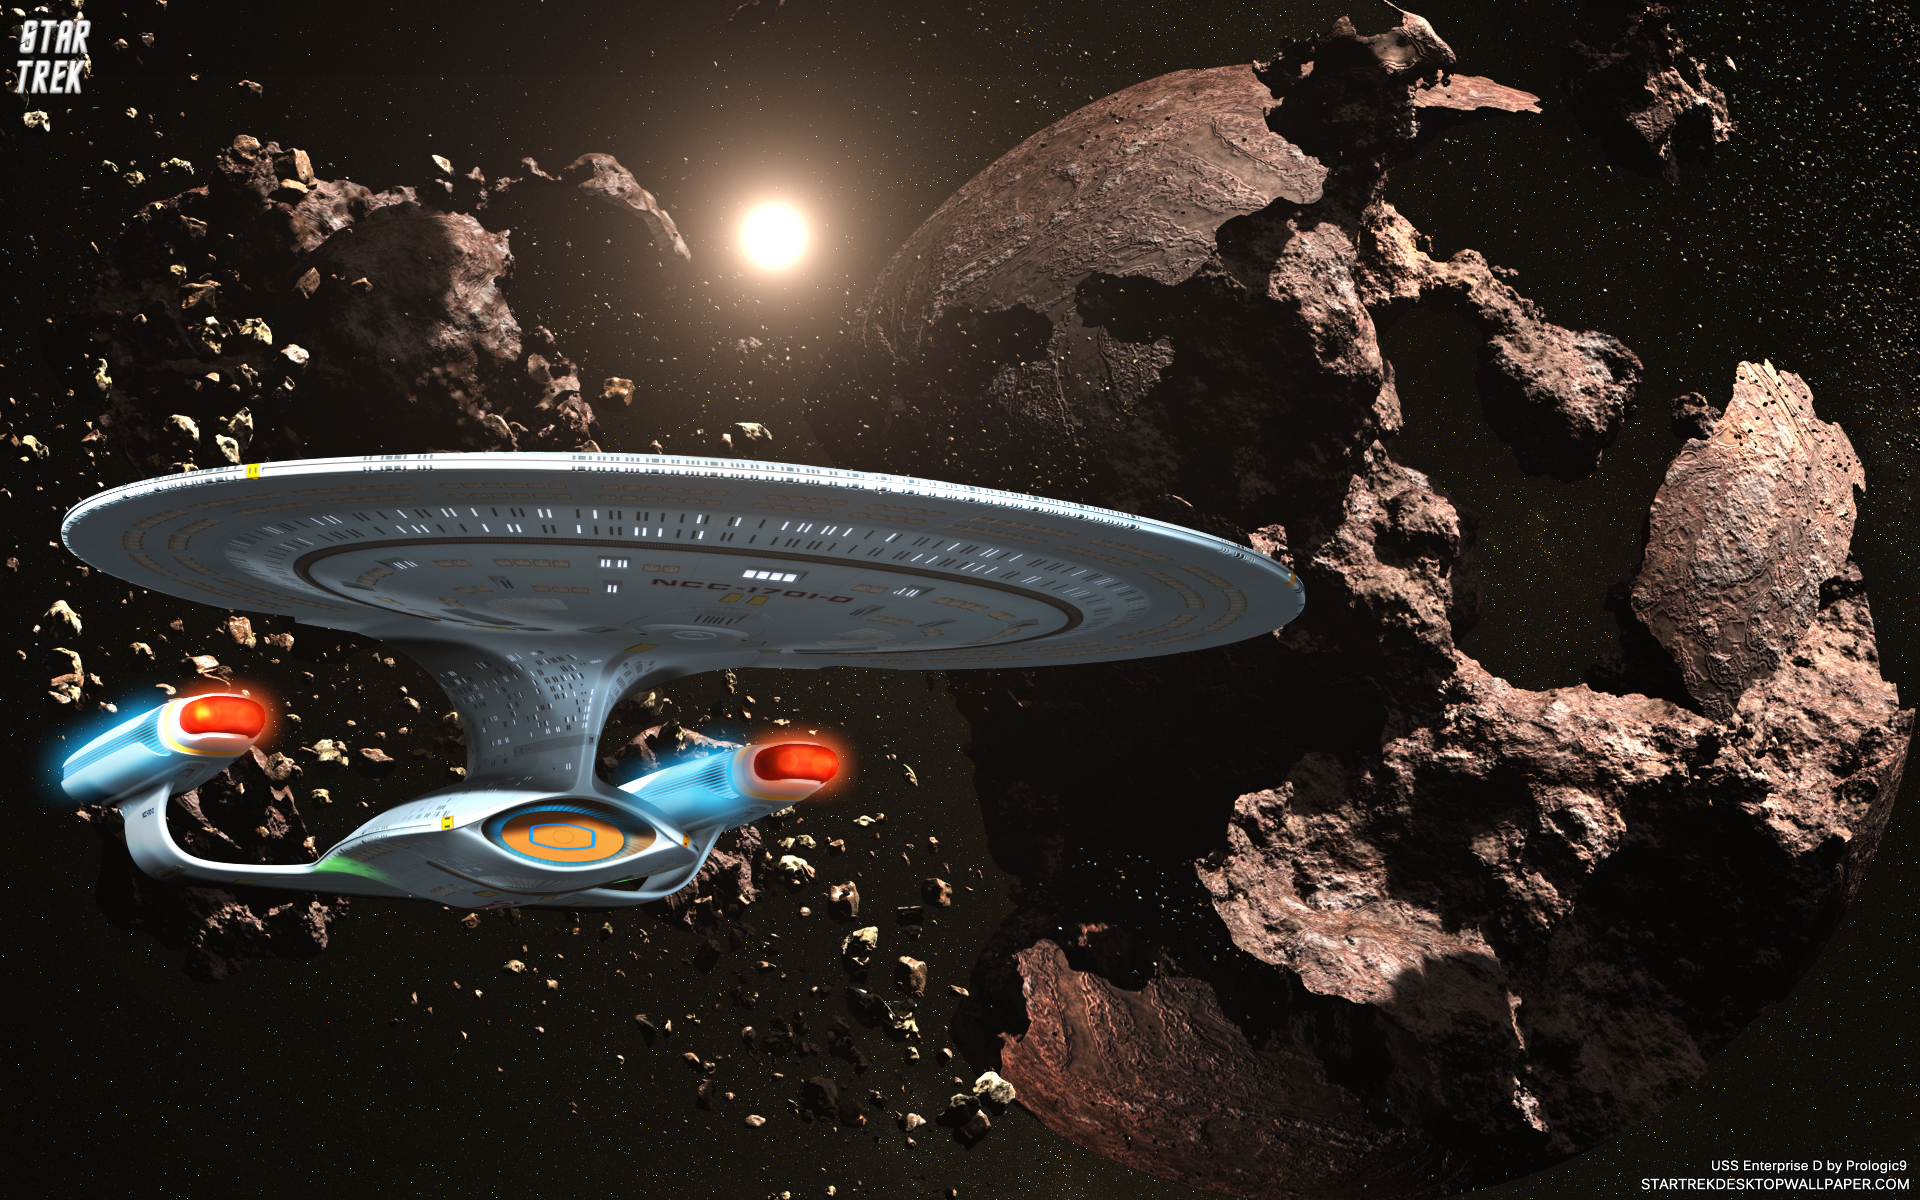 Star Trek Uss Enterprise D Ncc In Asteroid Field